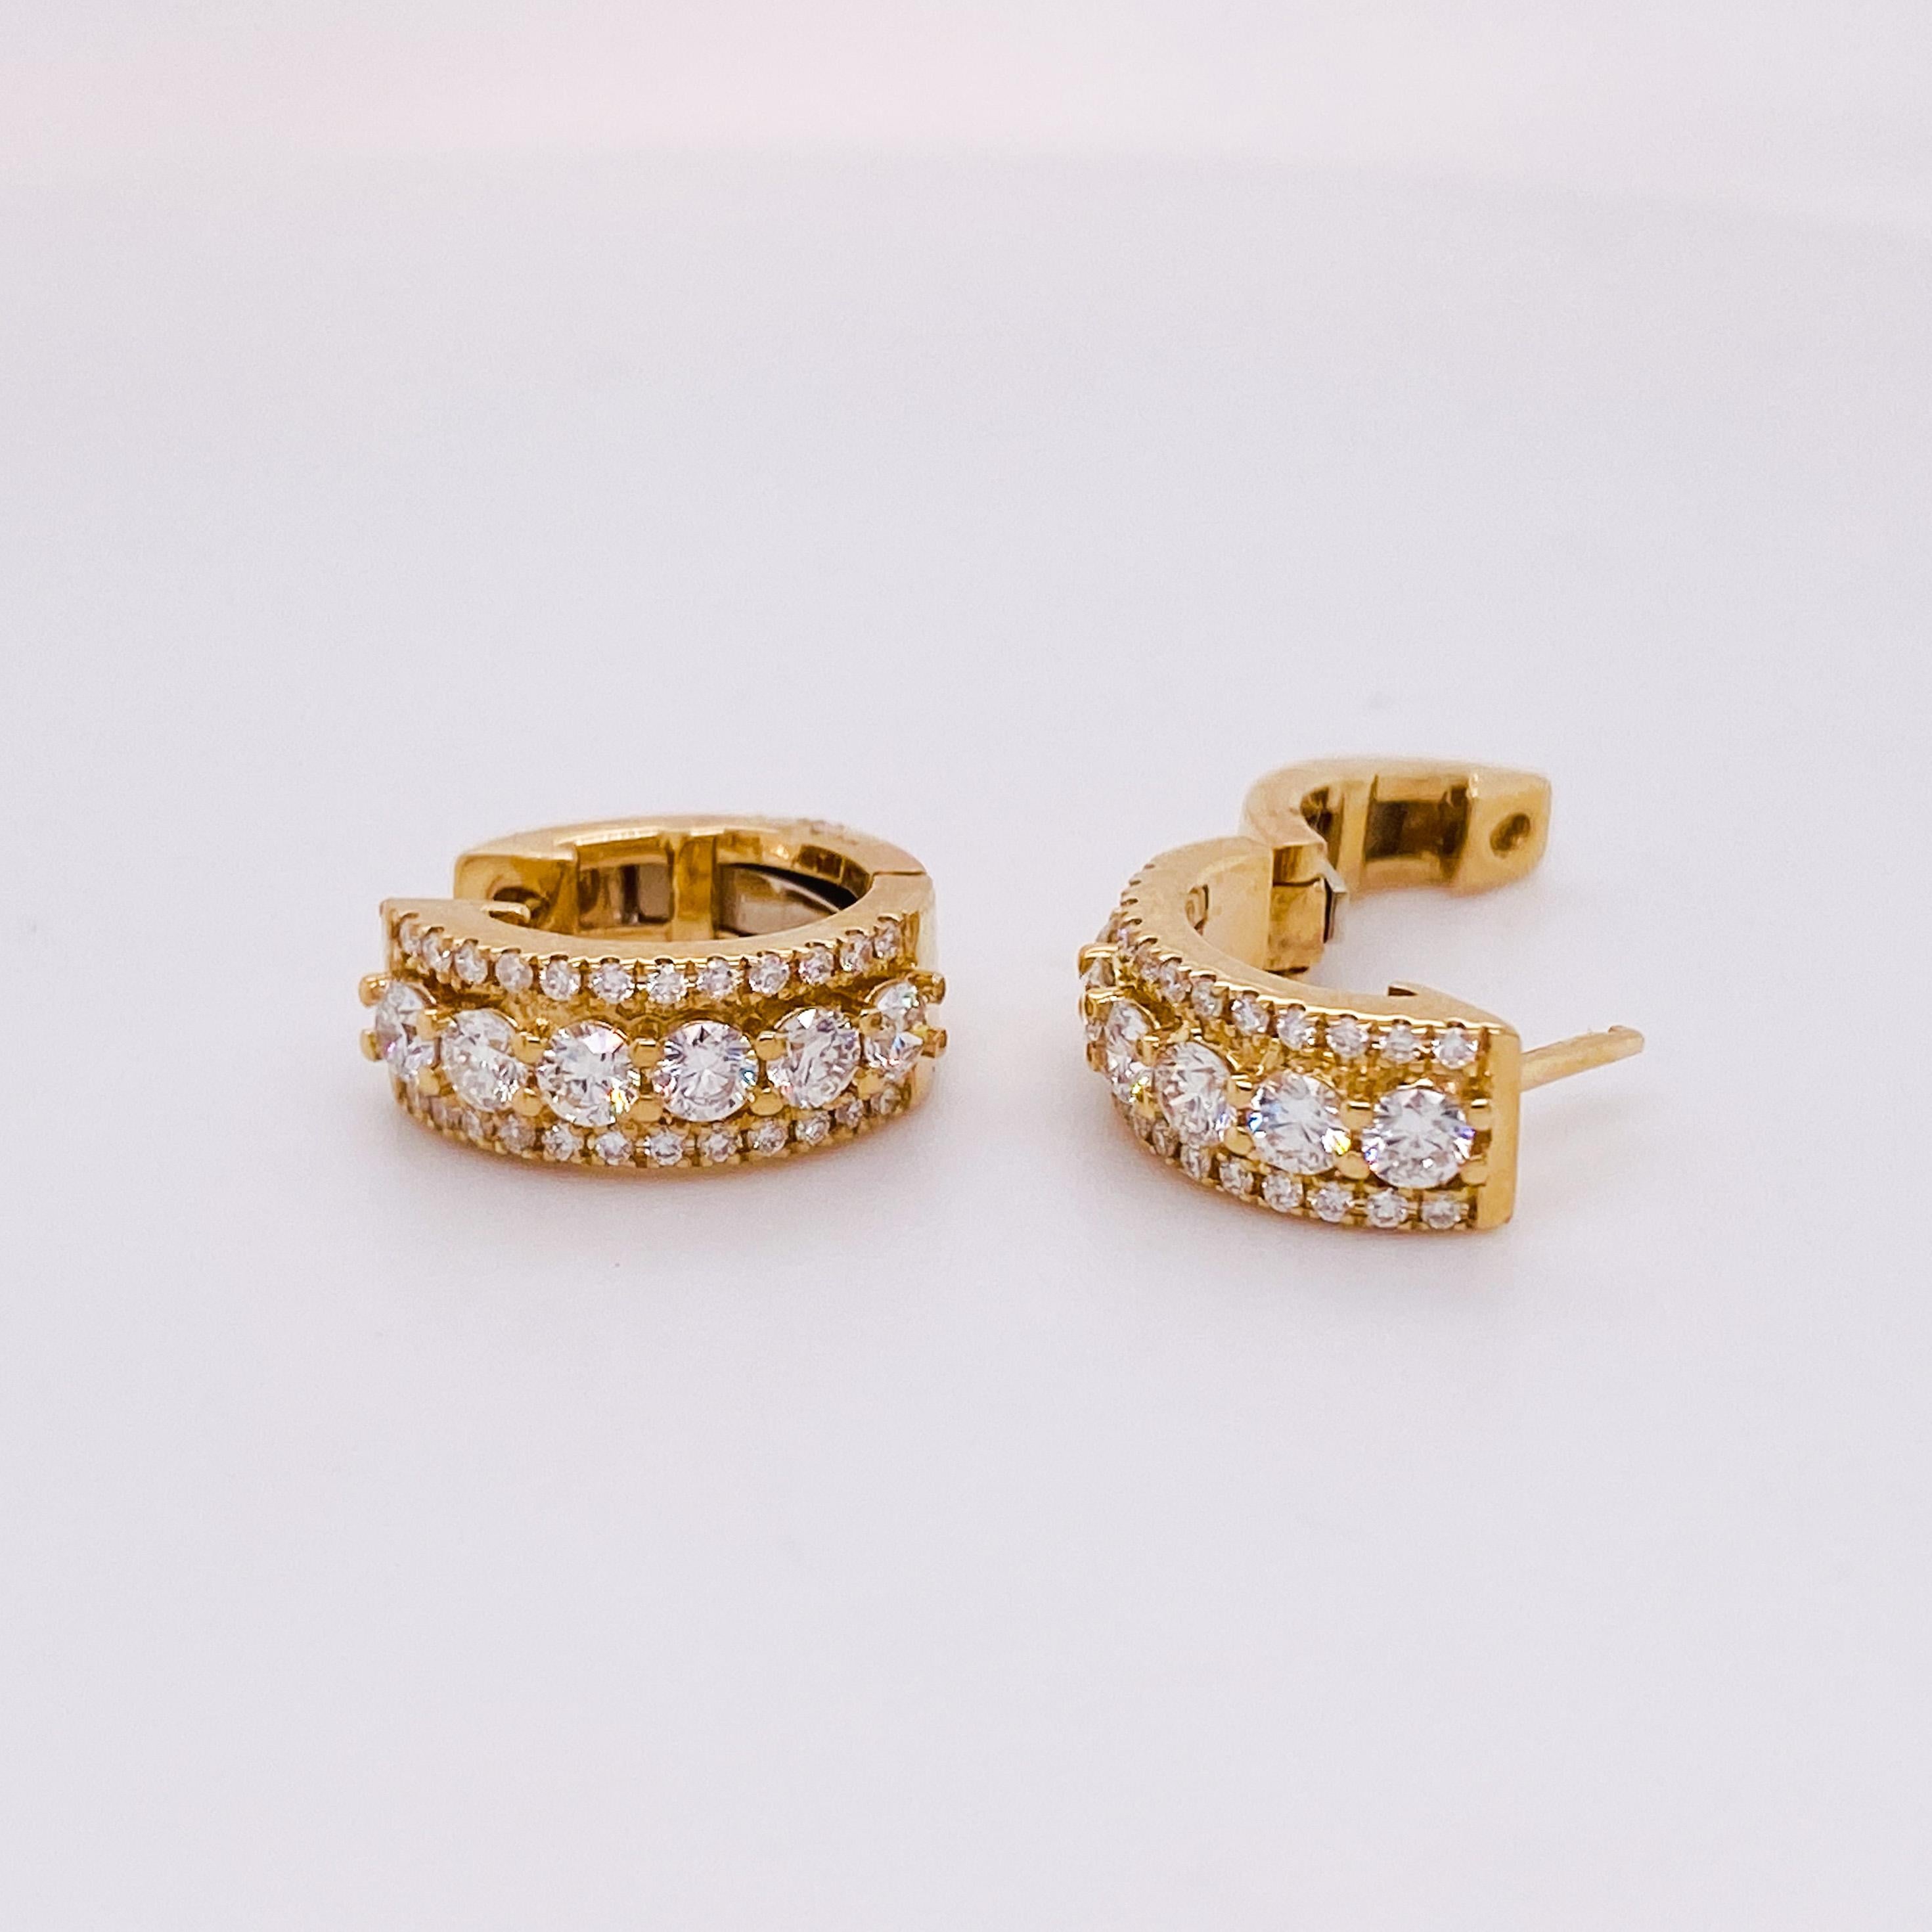 Ces superbes anneaux en diamant ont un design unique et intemporel qui s'harmonise avec tous les looks. Que vous ayez les cheveux courts ou longs, ces boucles d'oreilles brilleront dans toutes les directions ! Vous allez adorer ces boucles